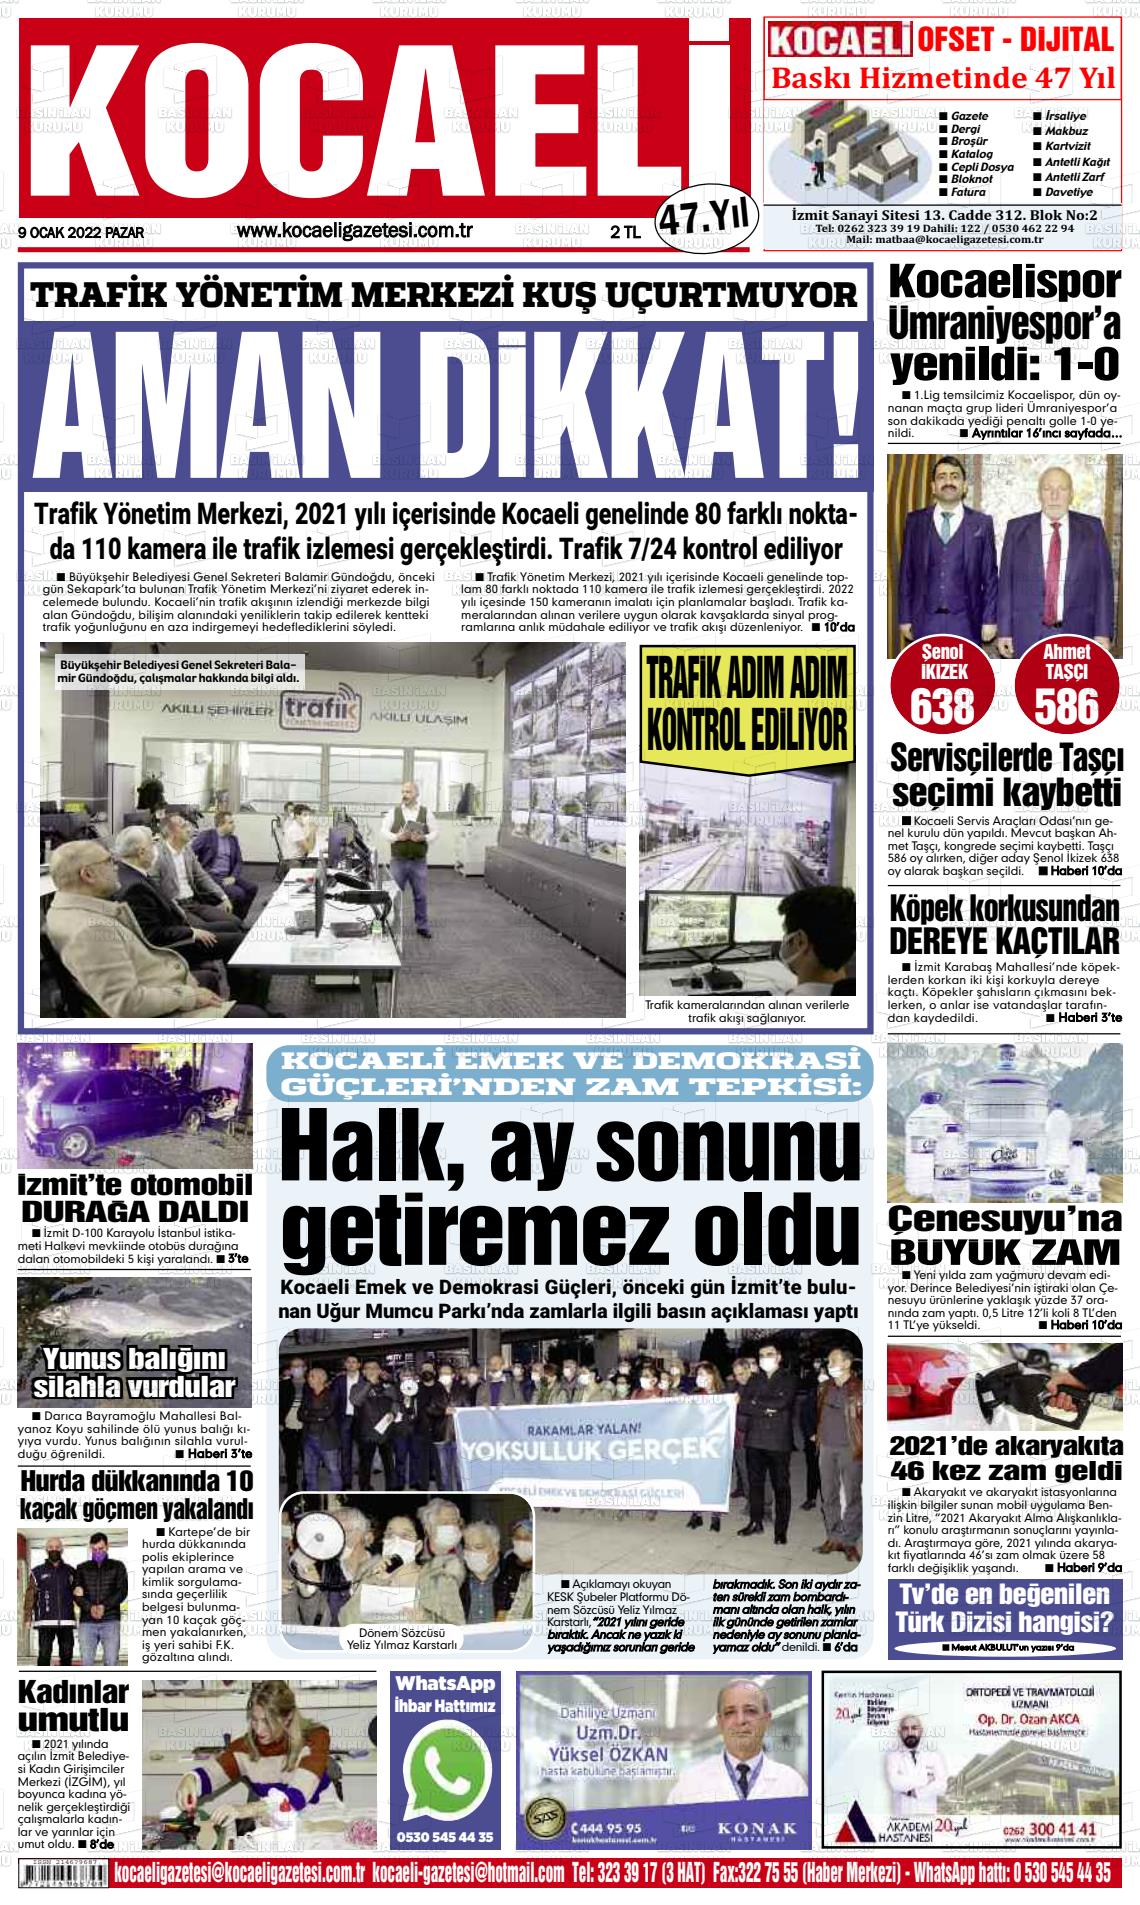 09 Ocak 2022 Kocaeli Gazete Manşeti